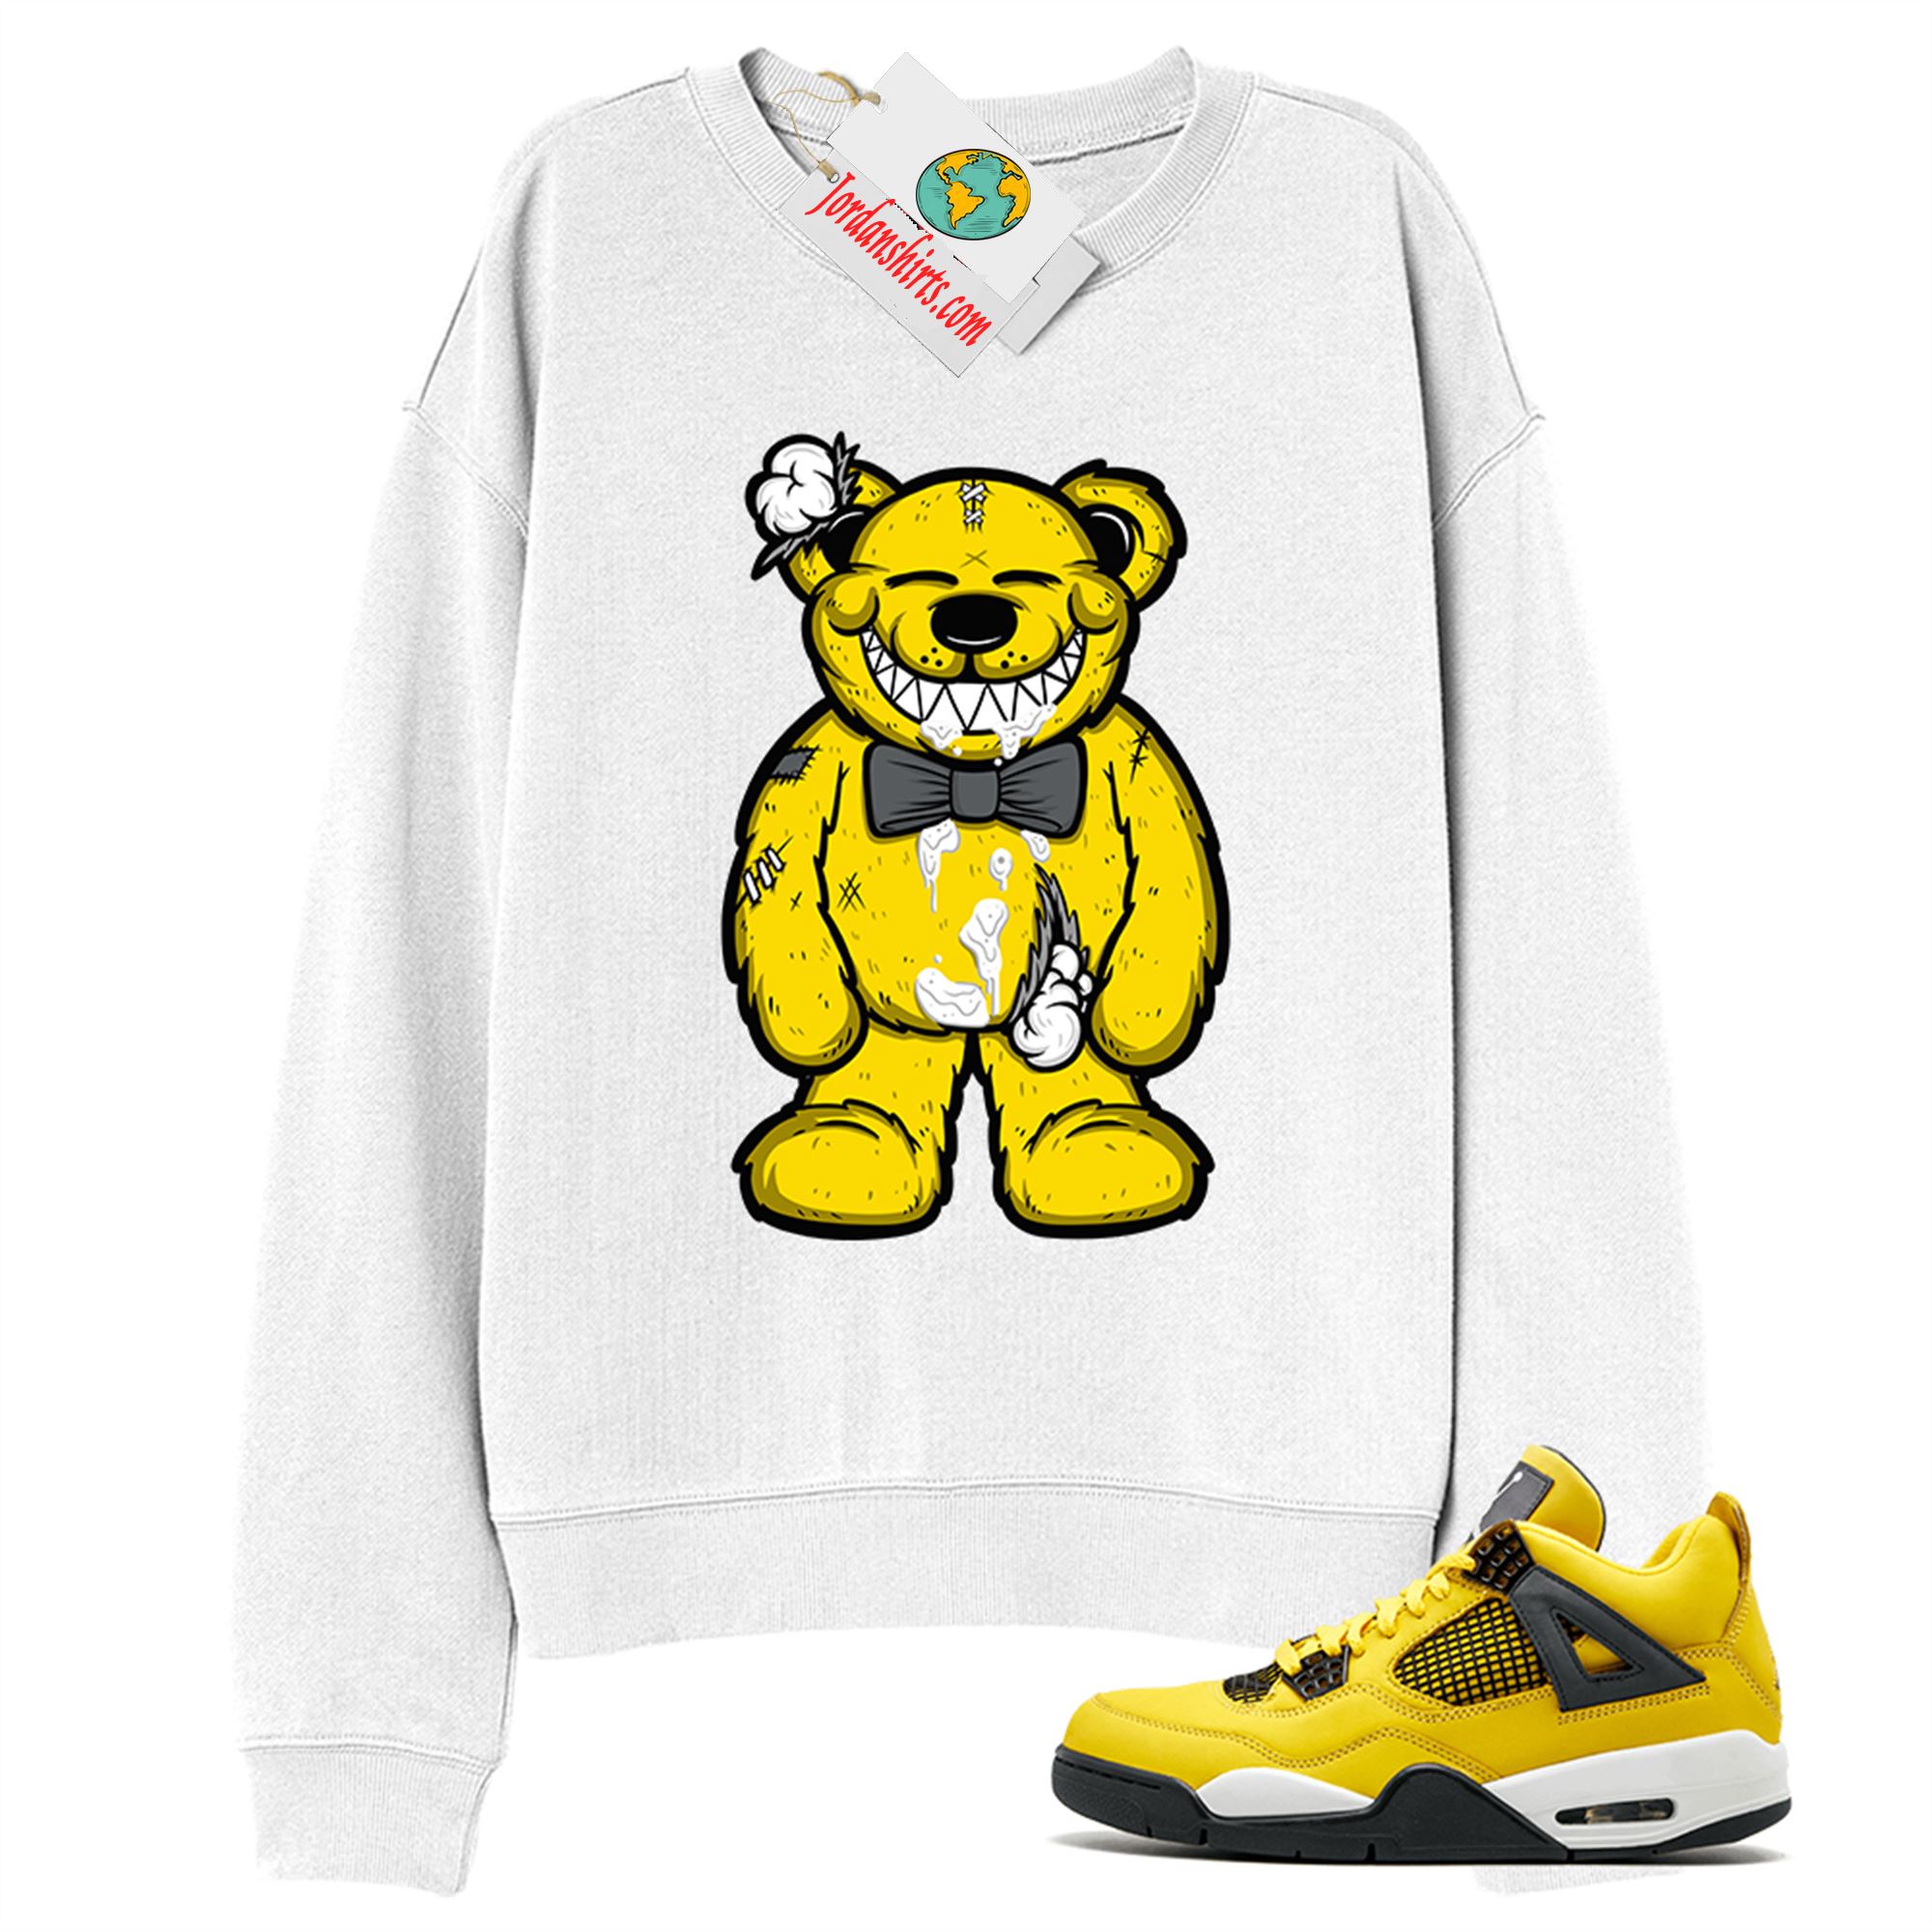 Jordan 4 Sweatshirt, Teddy Bear Smile White Sweatshirt Air Jordan 4 Tour Yellow Lightning 4s Full Size Up To 5xl